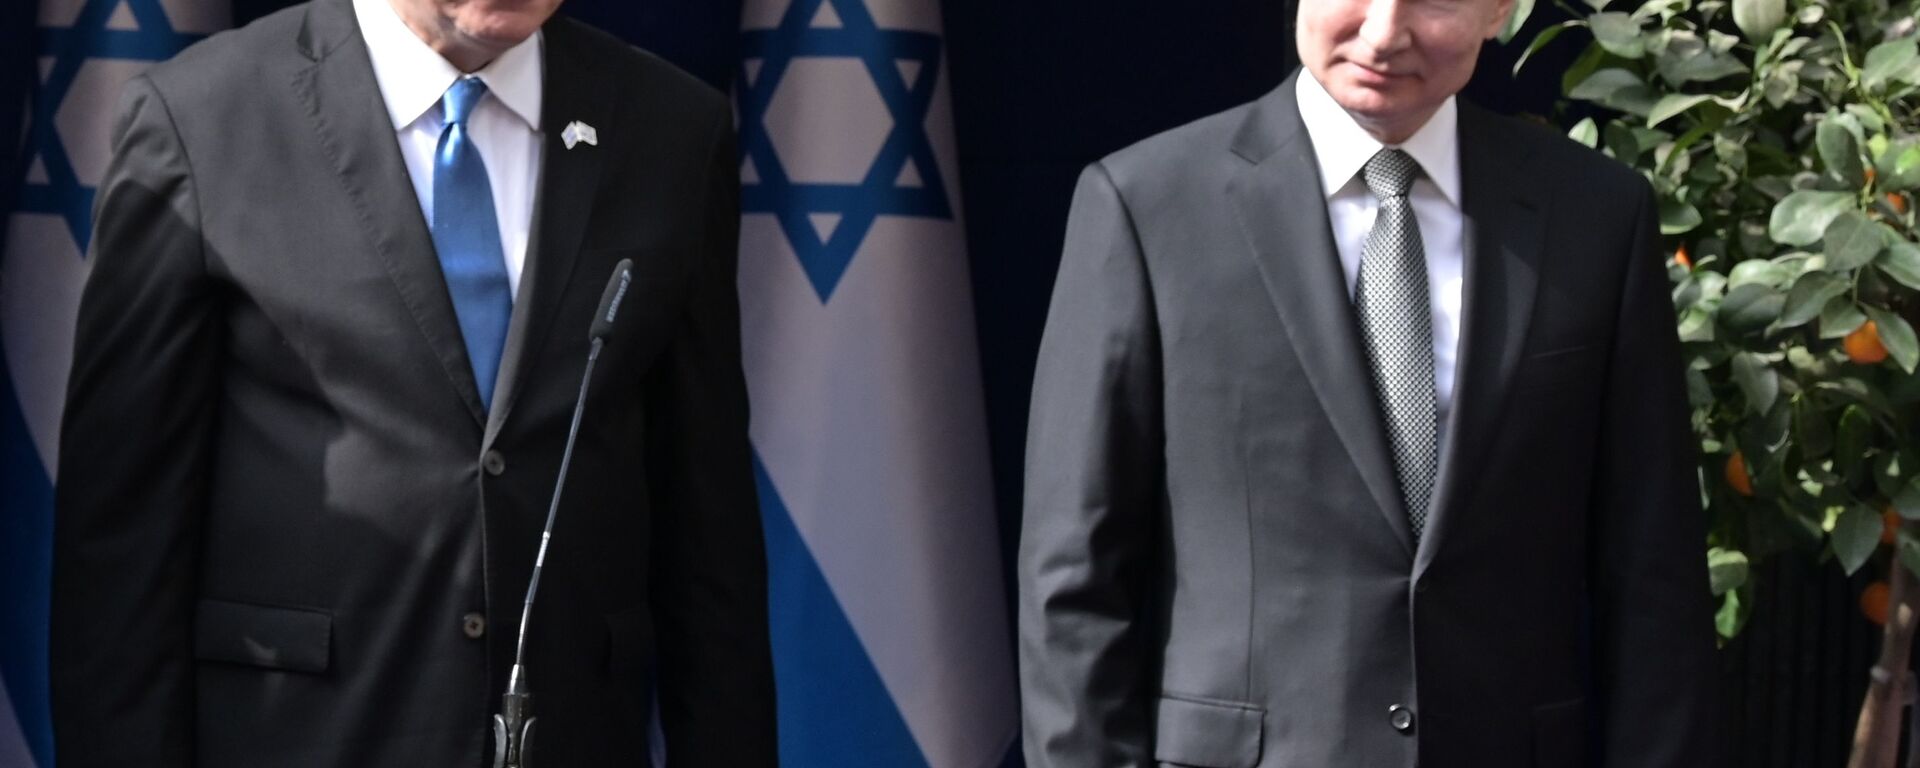 Predsednik Rusije Vladimir Putin i izraelski premijer Benjamin Netanijahu - Sputnik Srbija, 1920, 18.11.2020